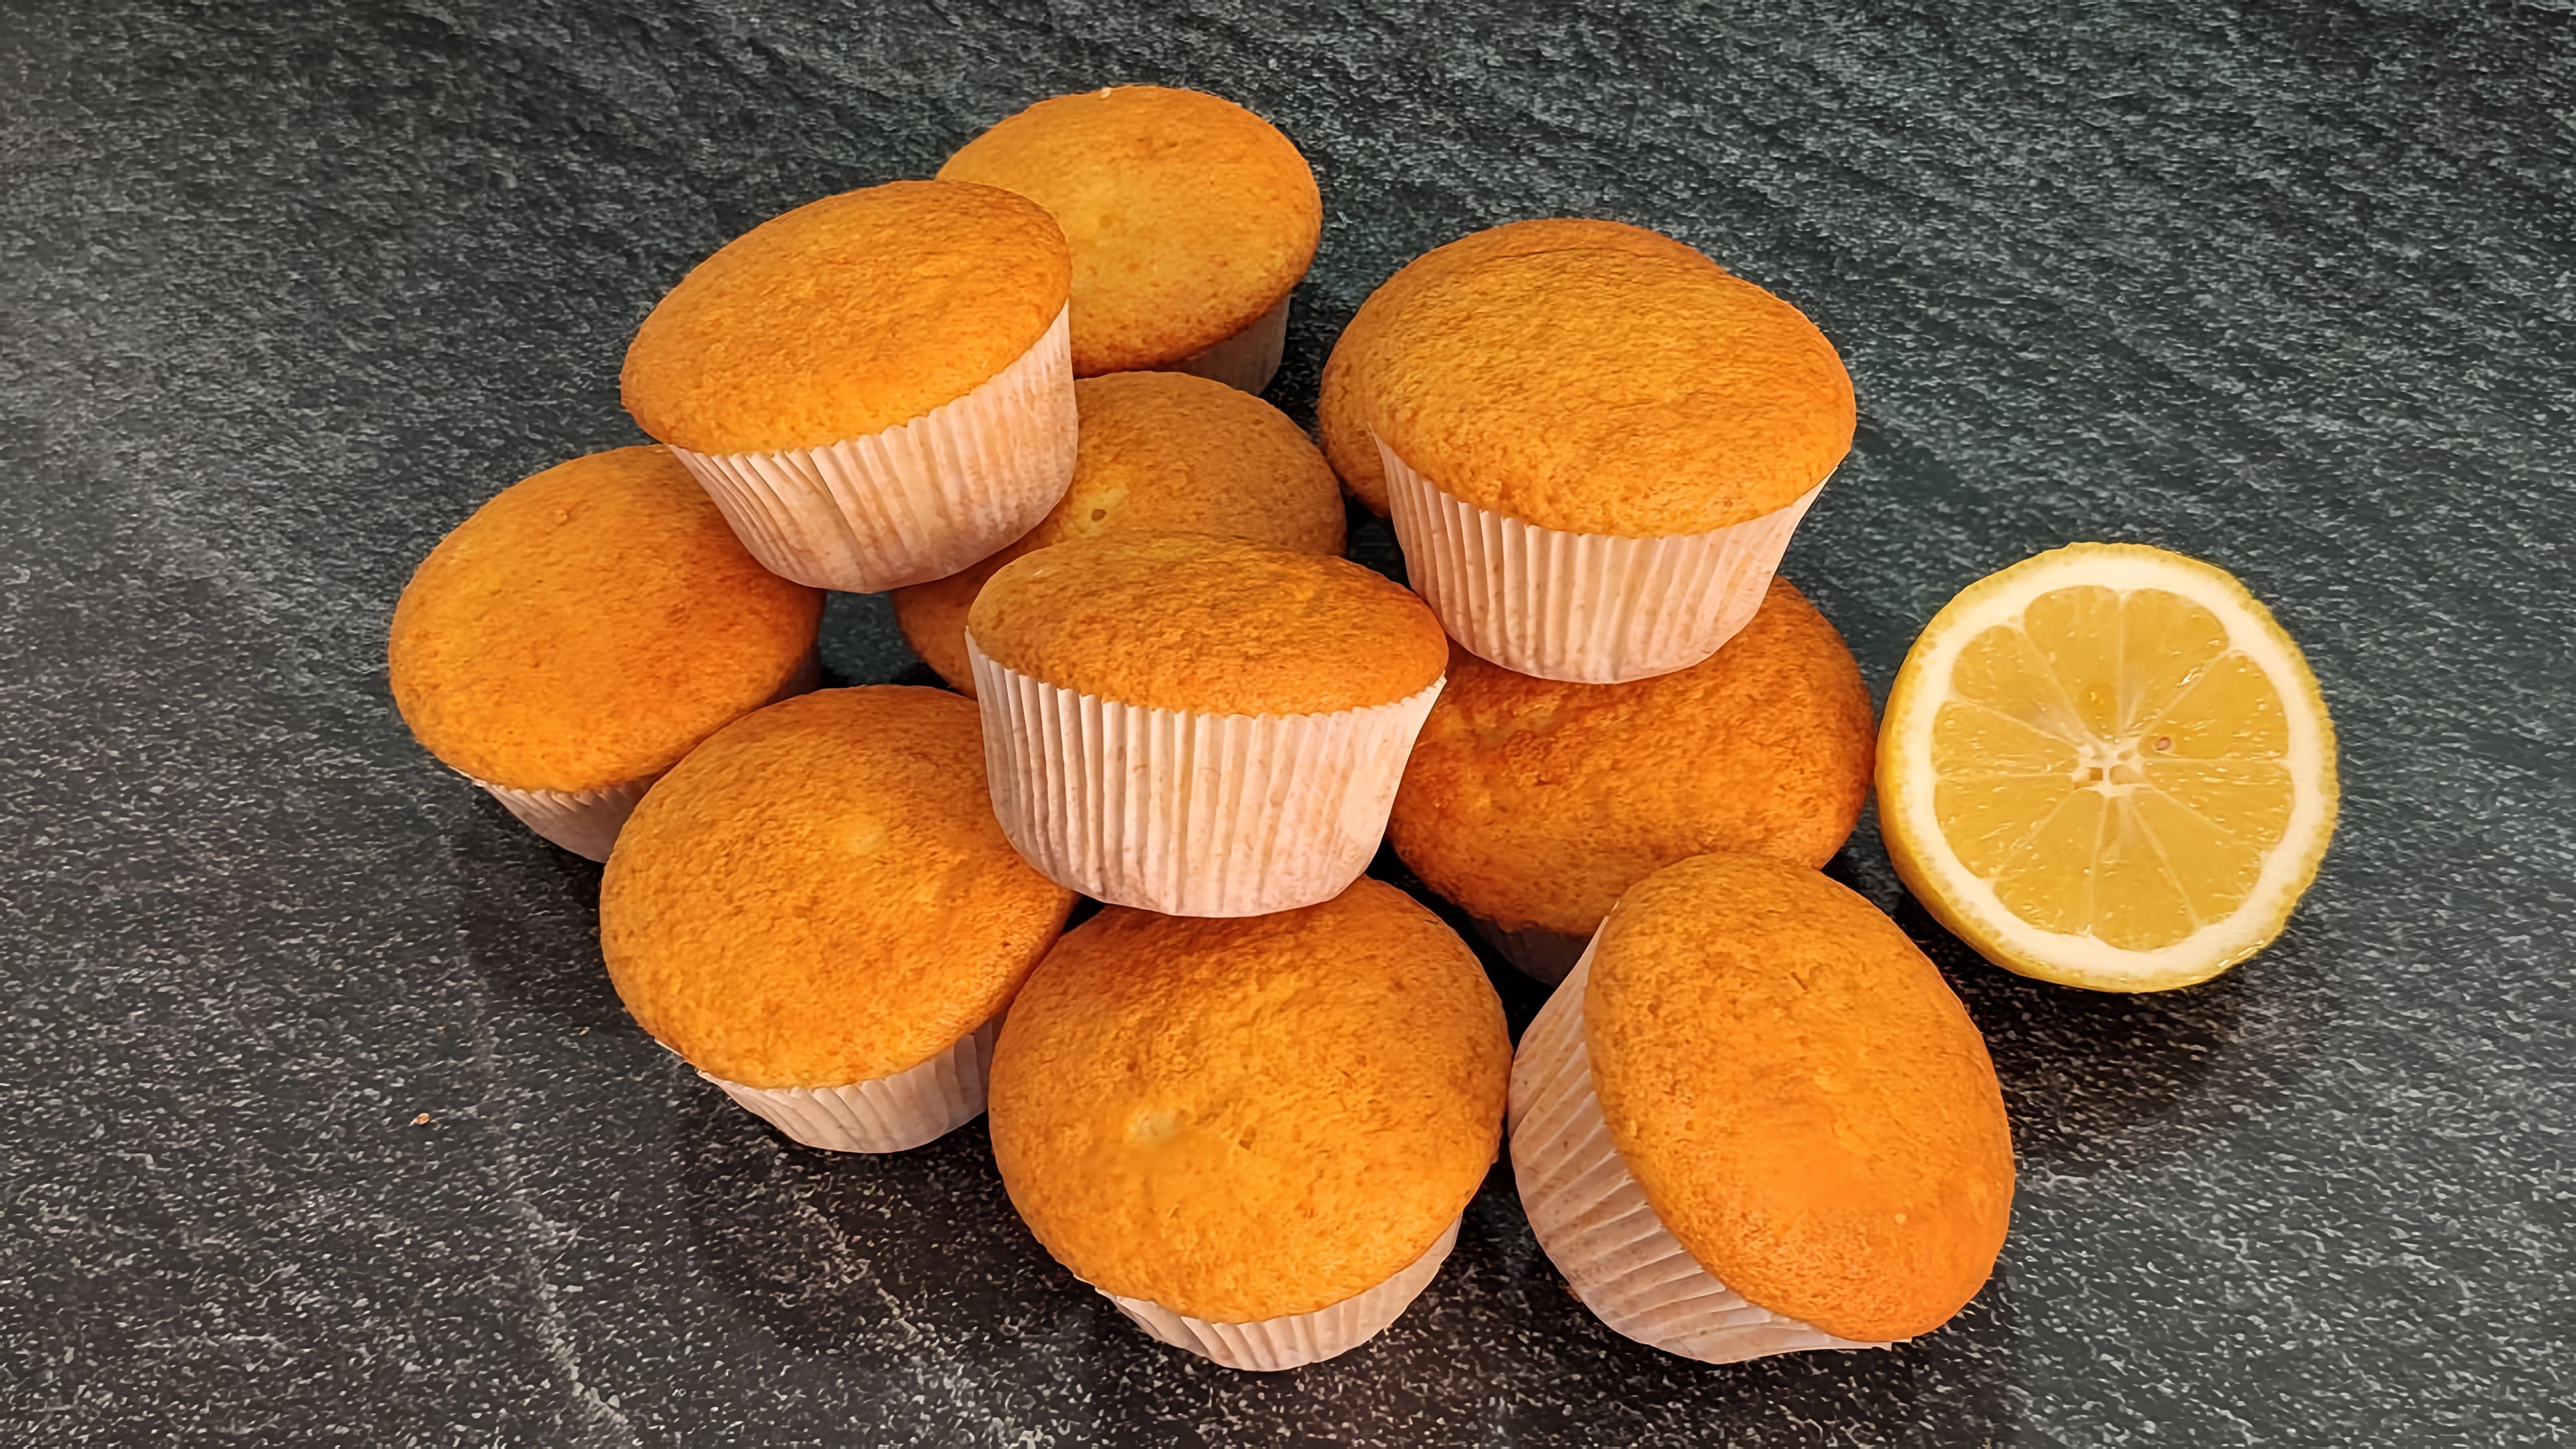 В данном видео демонстрируется процесс приготовления воздушных и идеально ровных лимонных кексов